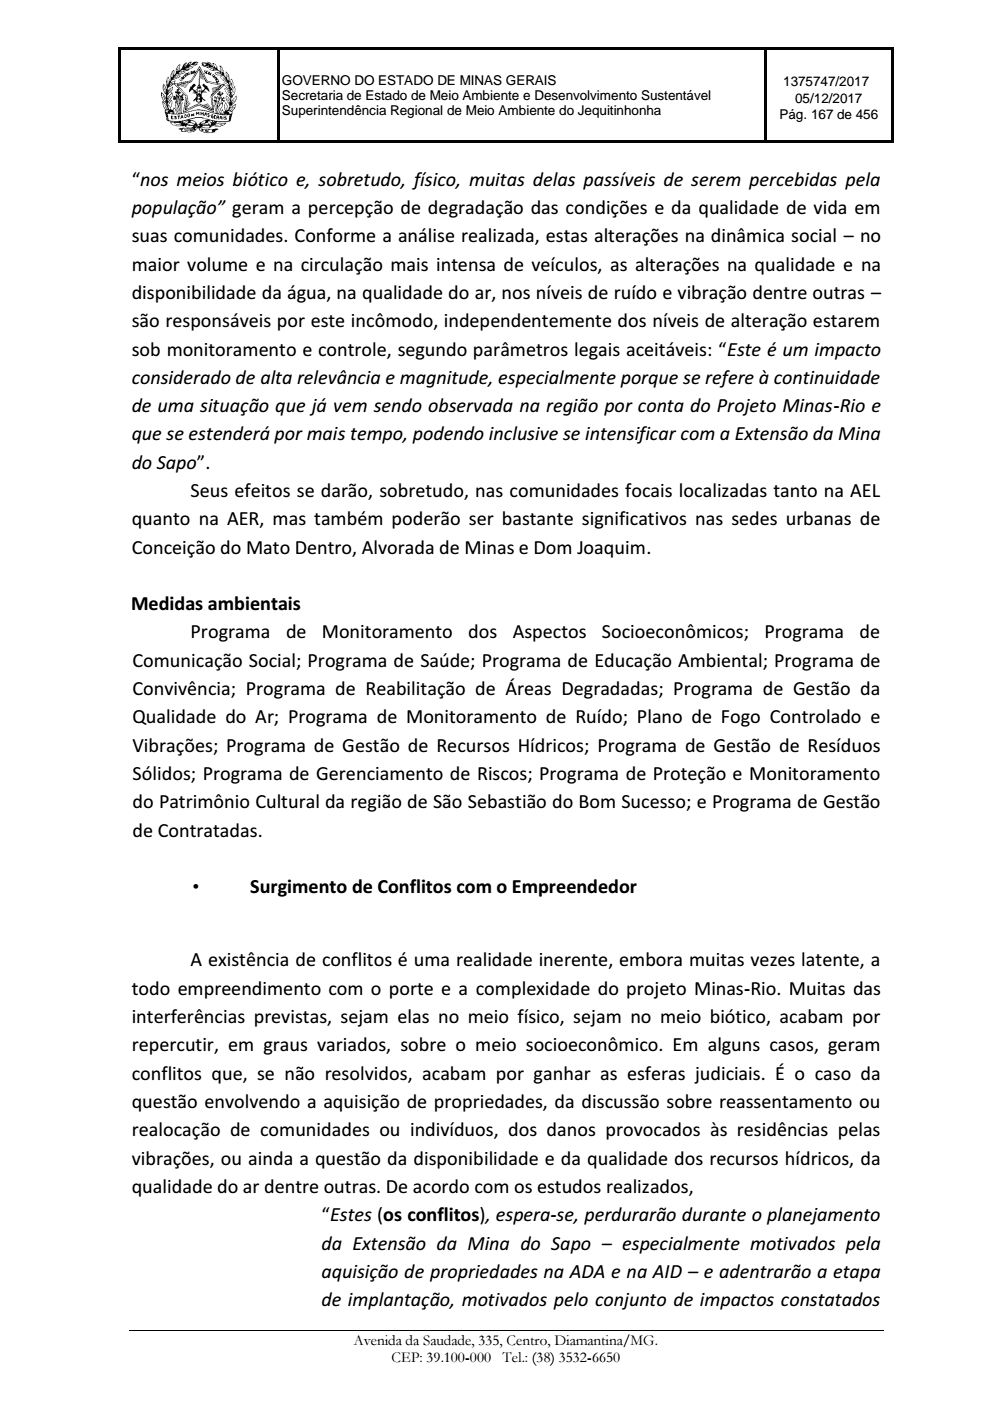 Page 167 from Parecer único da Secretaria de estado de Meio Ambiente e Desenvolvimento Sustentável (SEMAD)